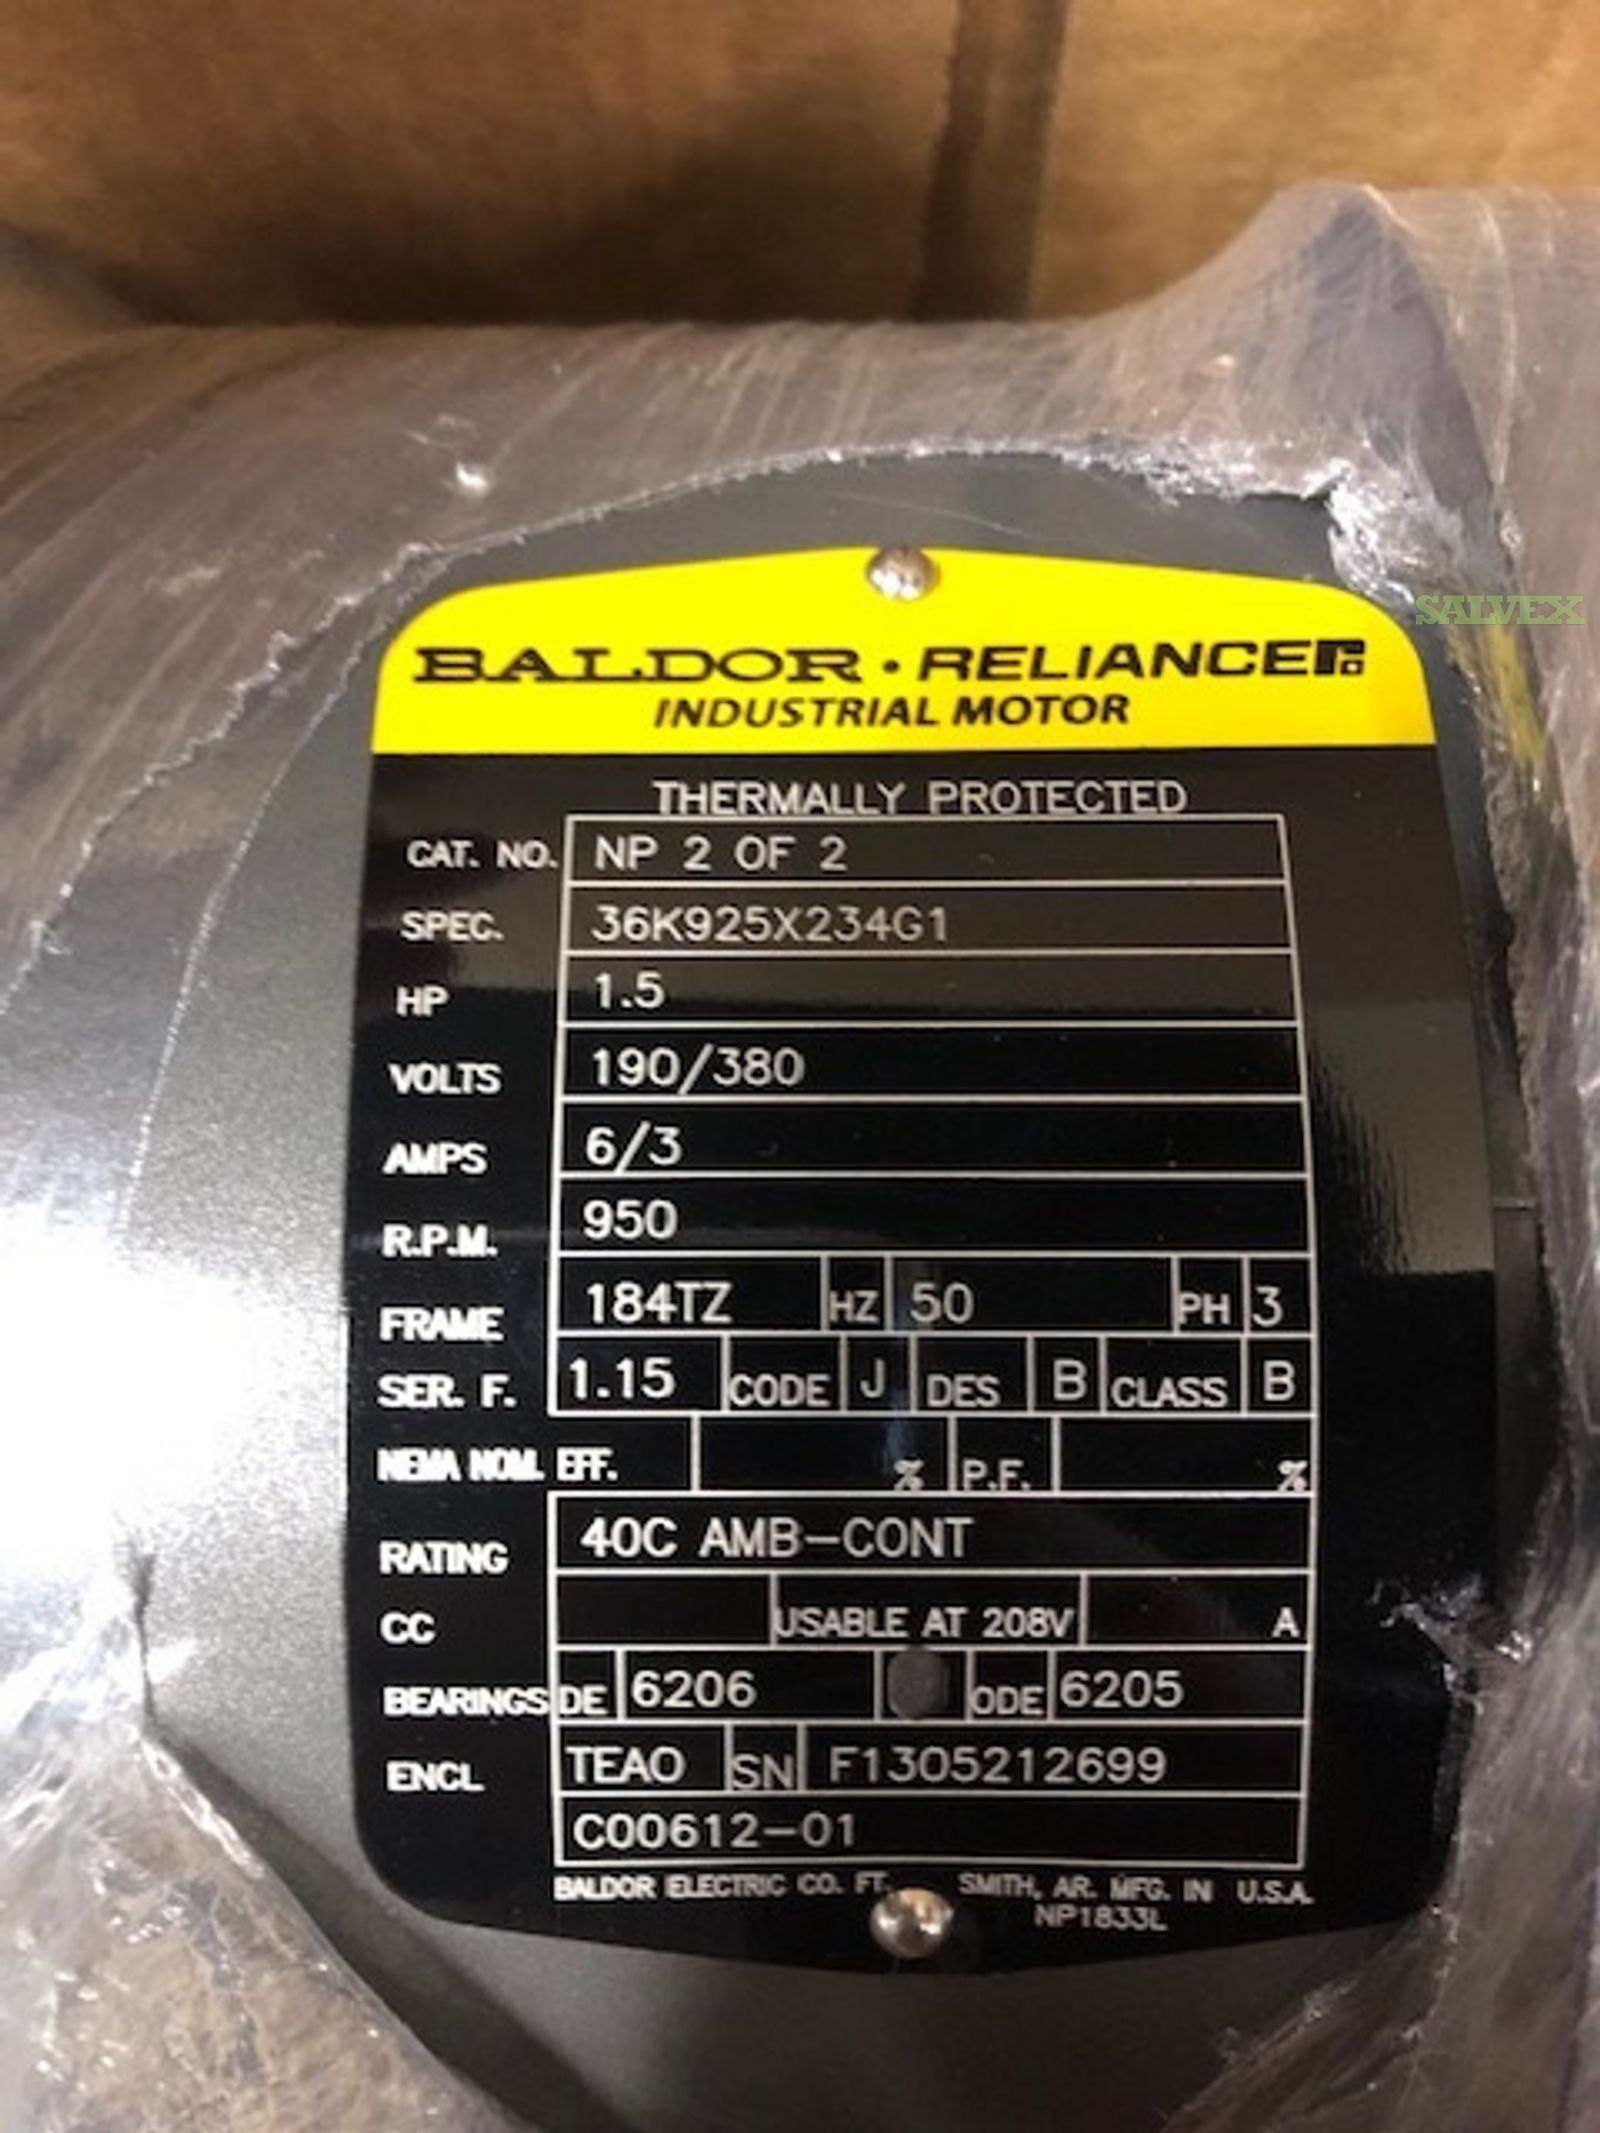 1.5 HP Baldor 3 Phz Motors 208-230/460V New and Sealed (34 Units)